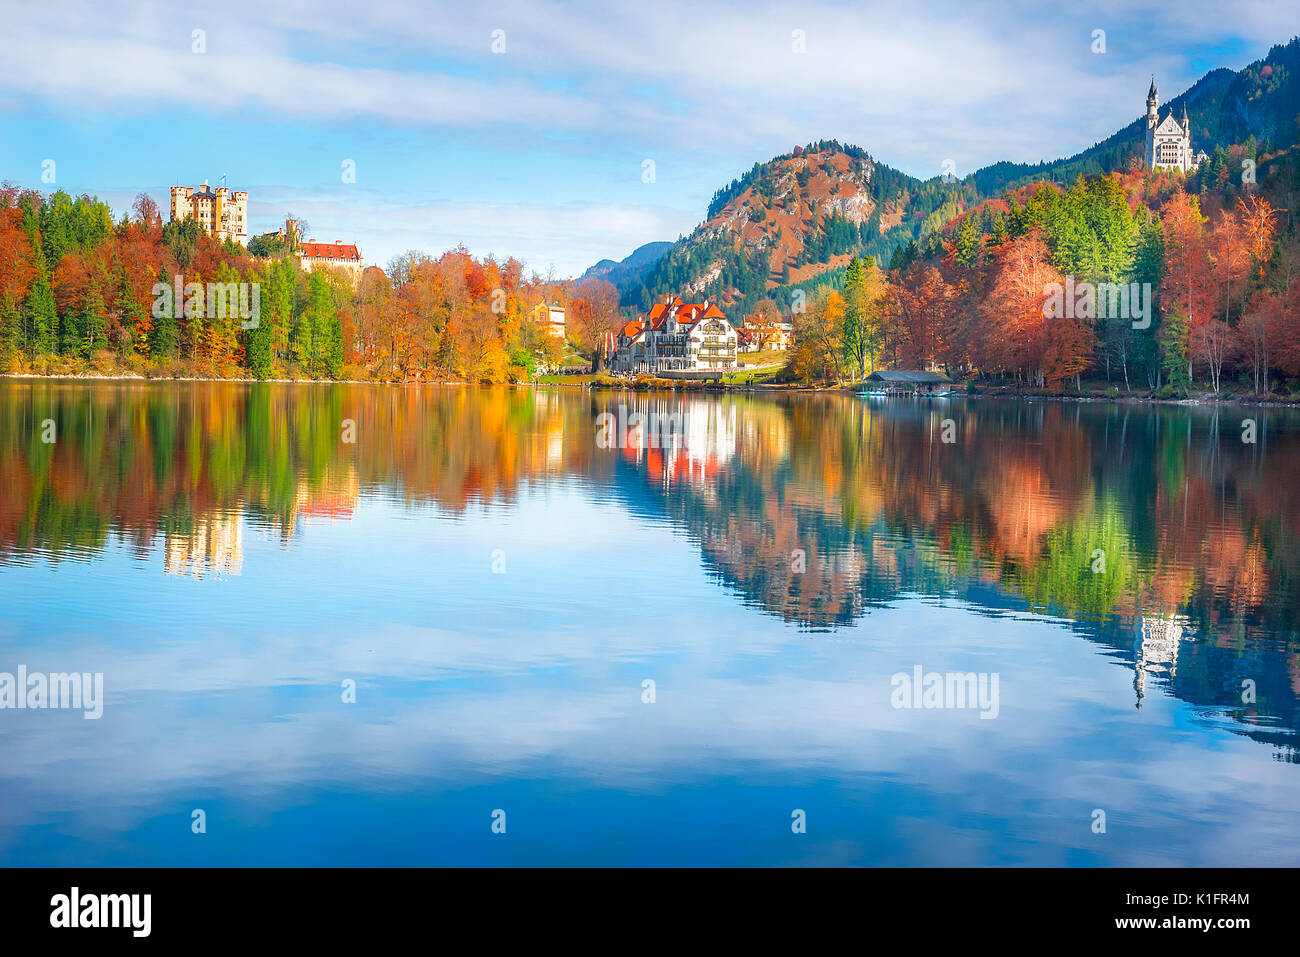 Il castello di Neuschwanstein e Hohenschwangau castello circondato da foreste in autunno colori e riflessi nel lago Alpsee Foto Stock